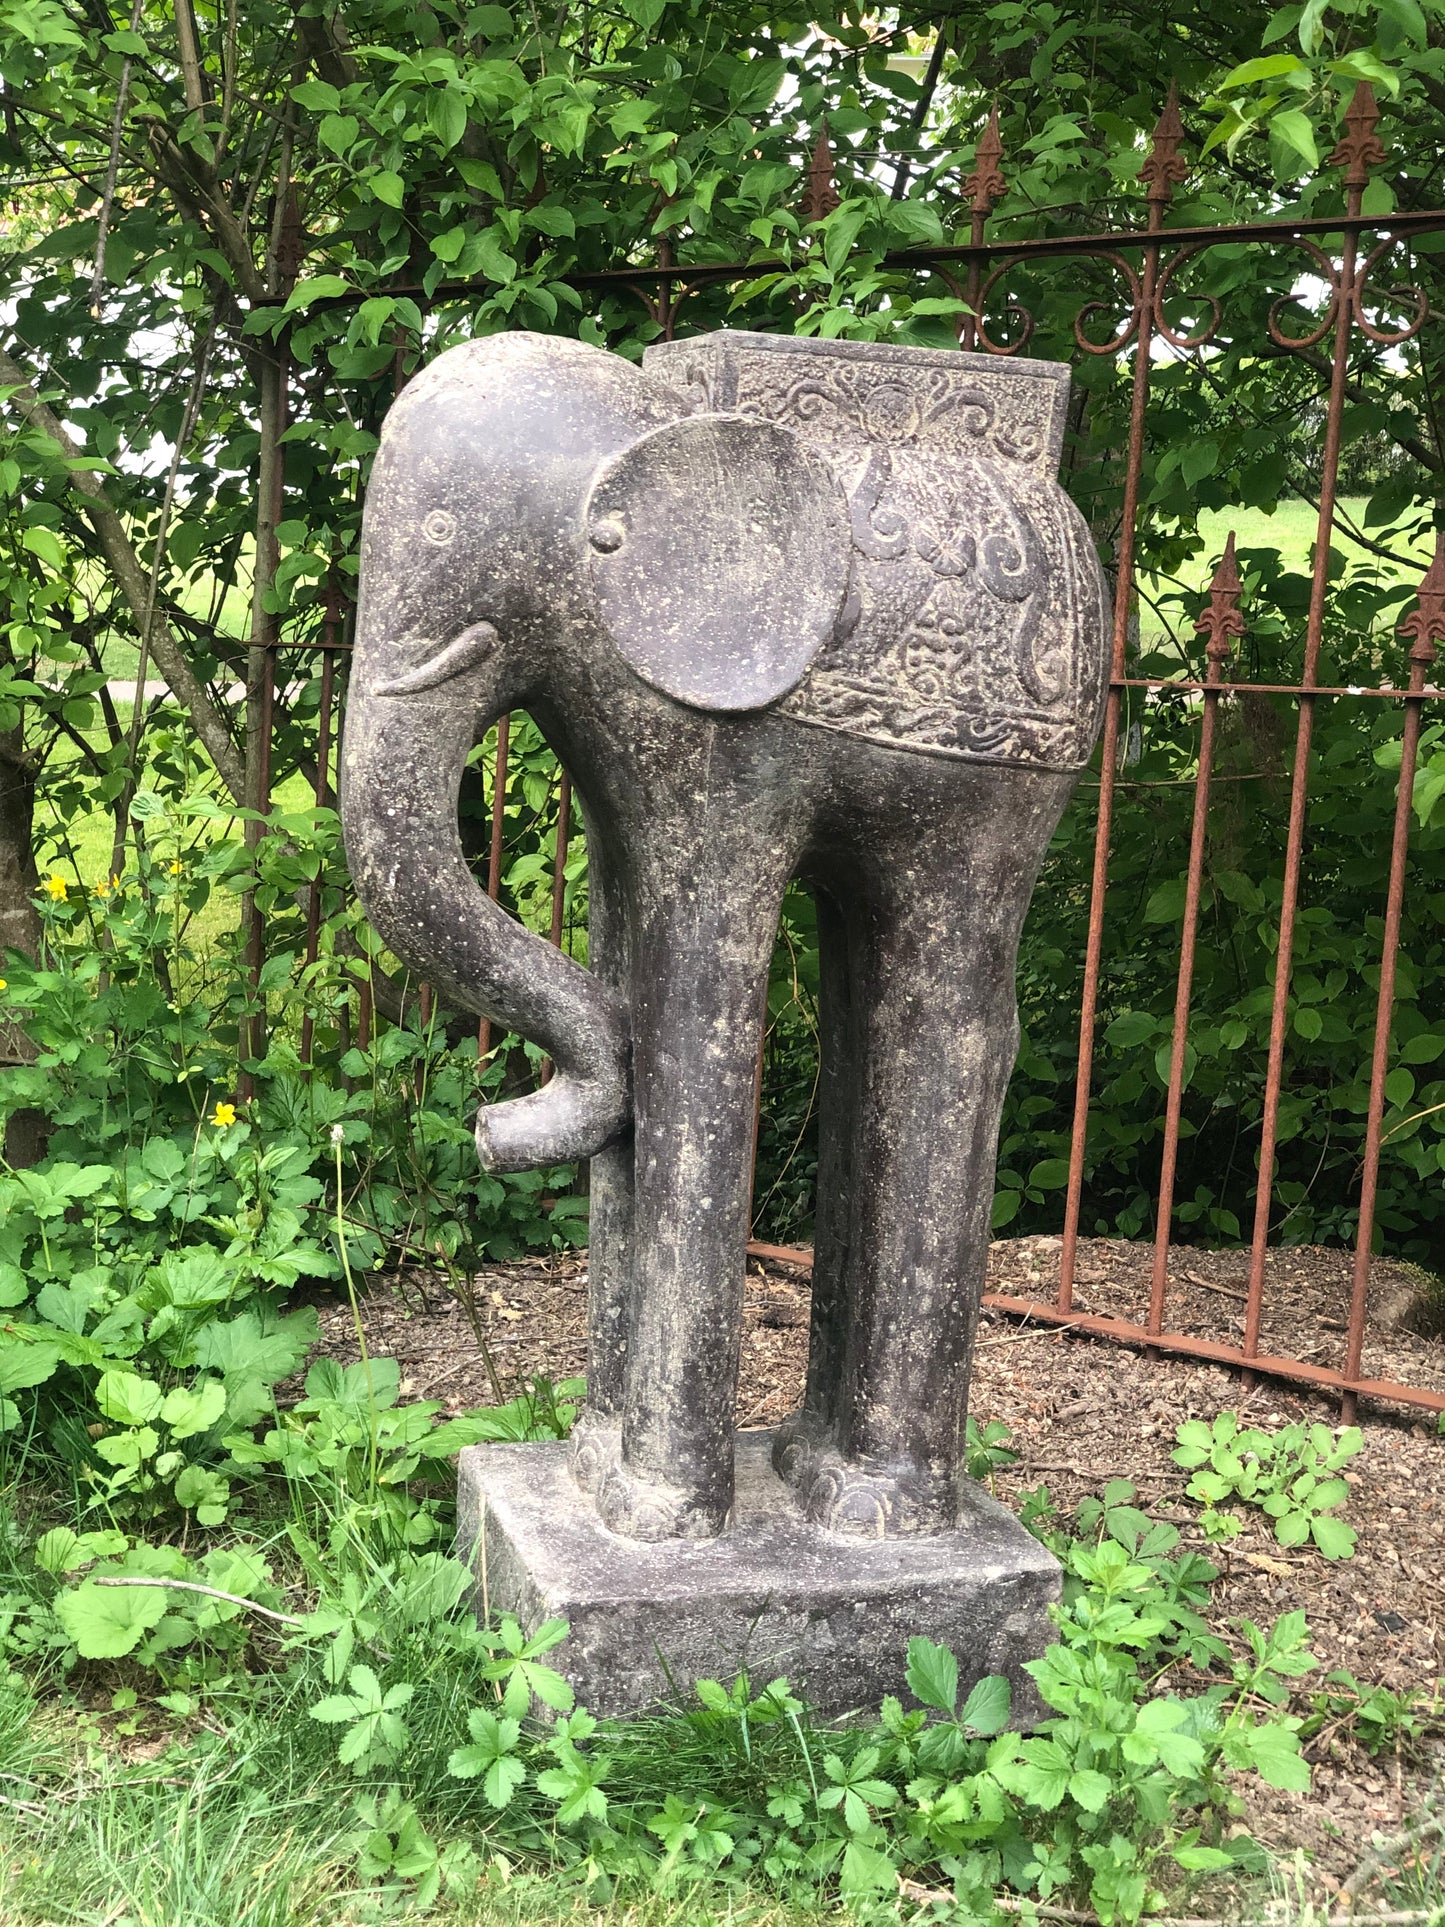 Elefanten Skulptur mit Sattel als Ablage